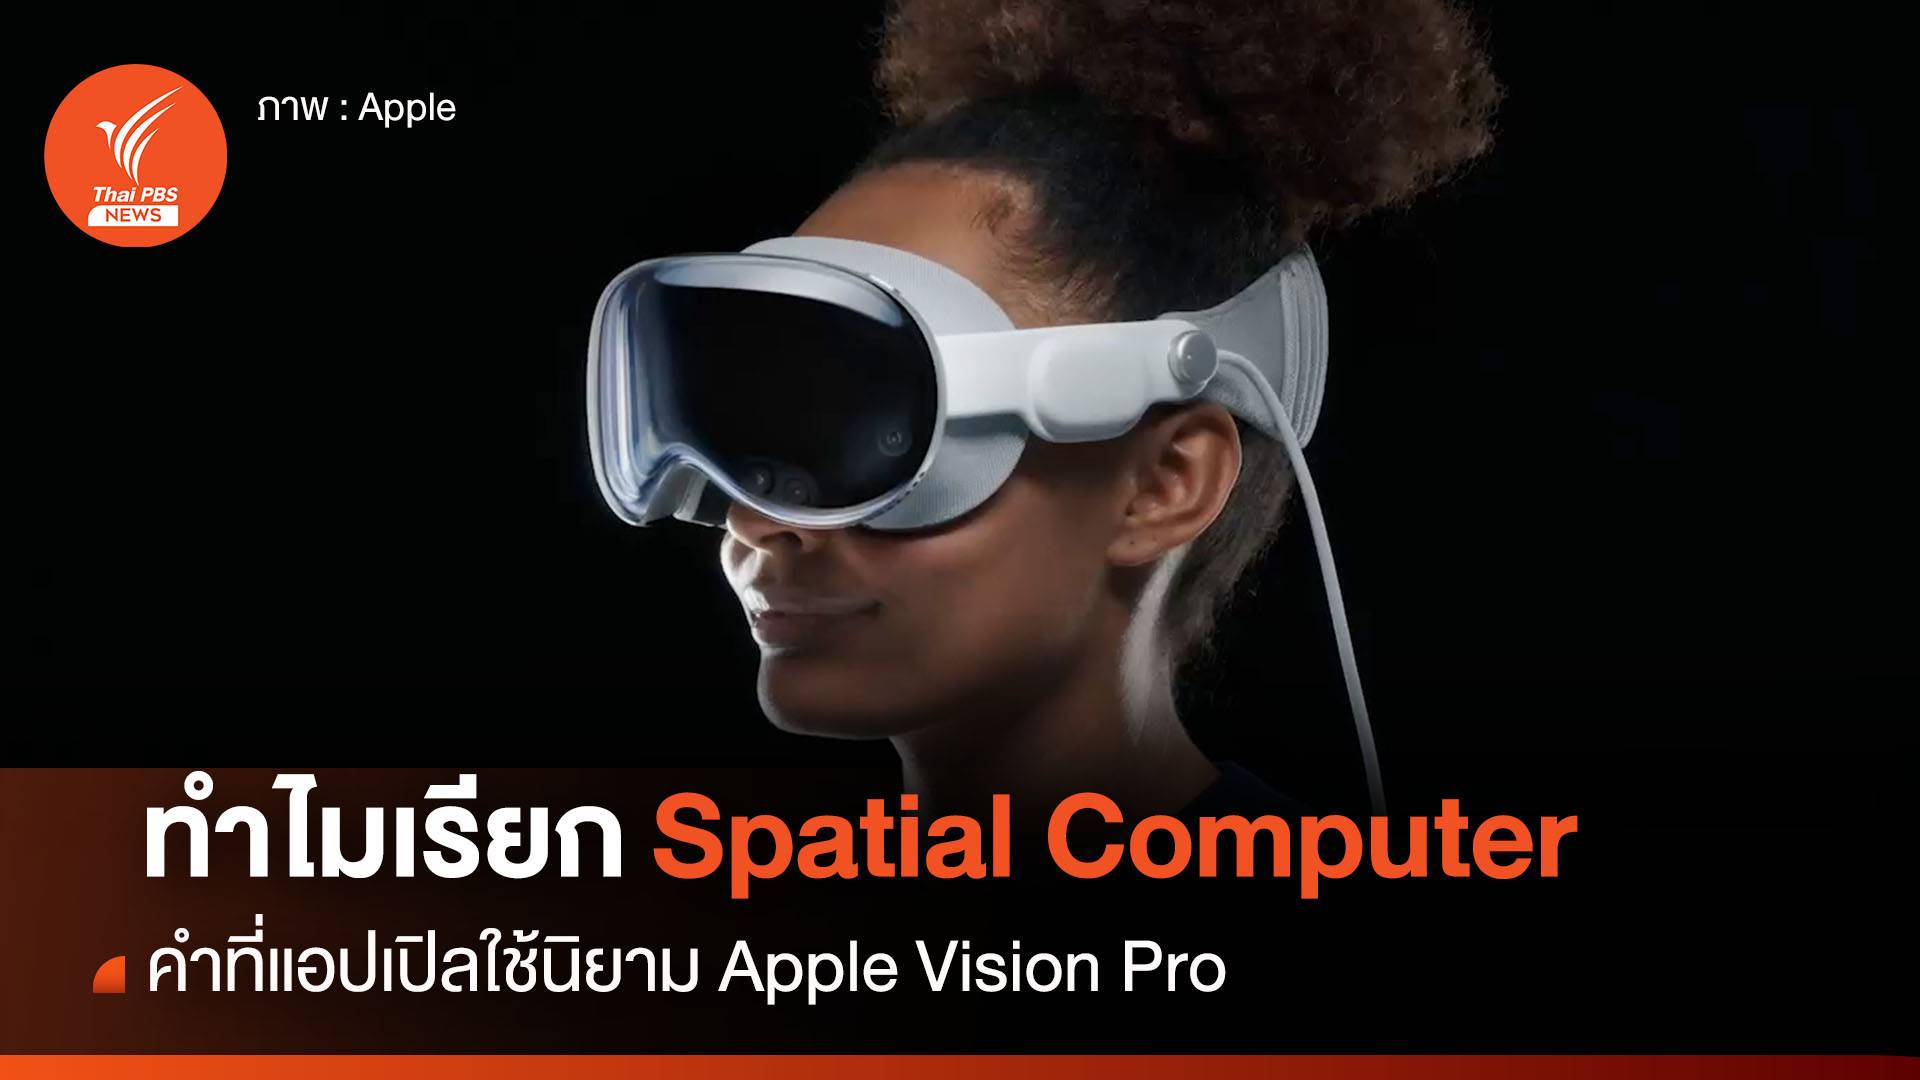 ทำไม ? แอปเปิลเรียก Apple Vision Pro ว่า Spatial Computer